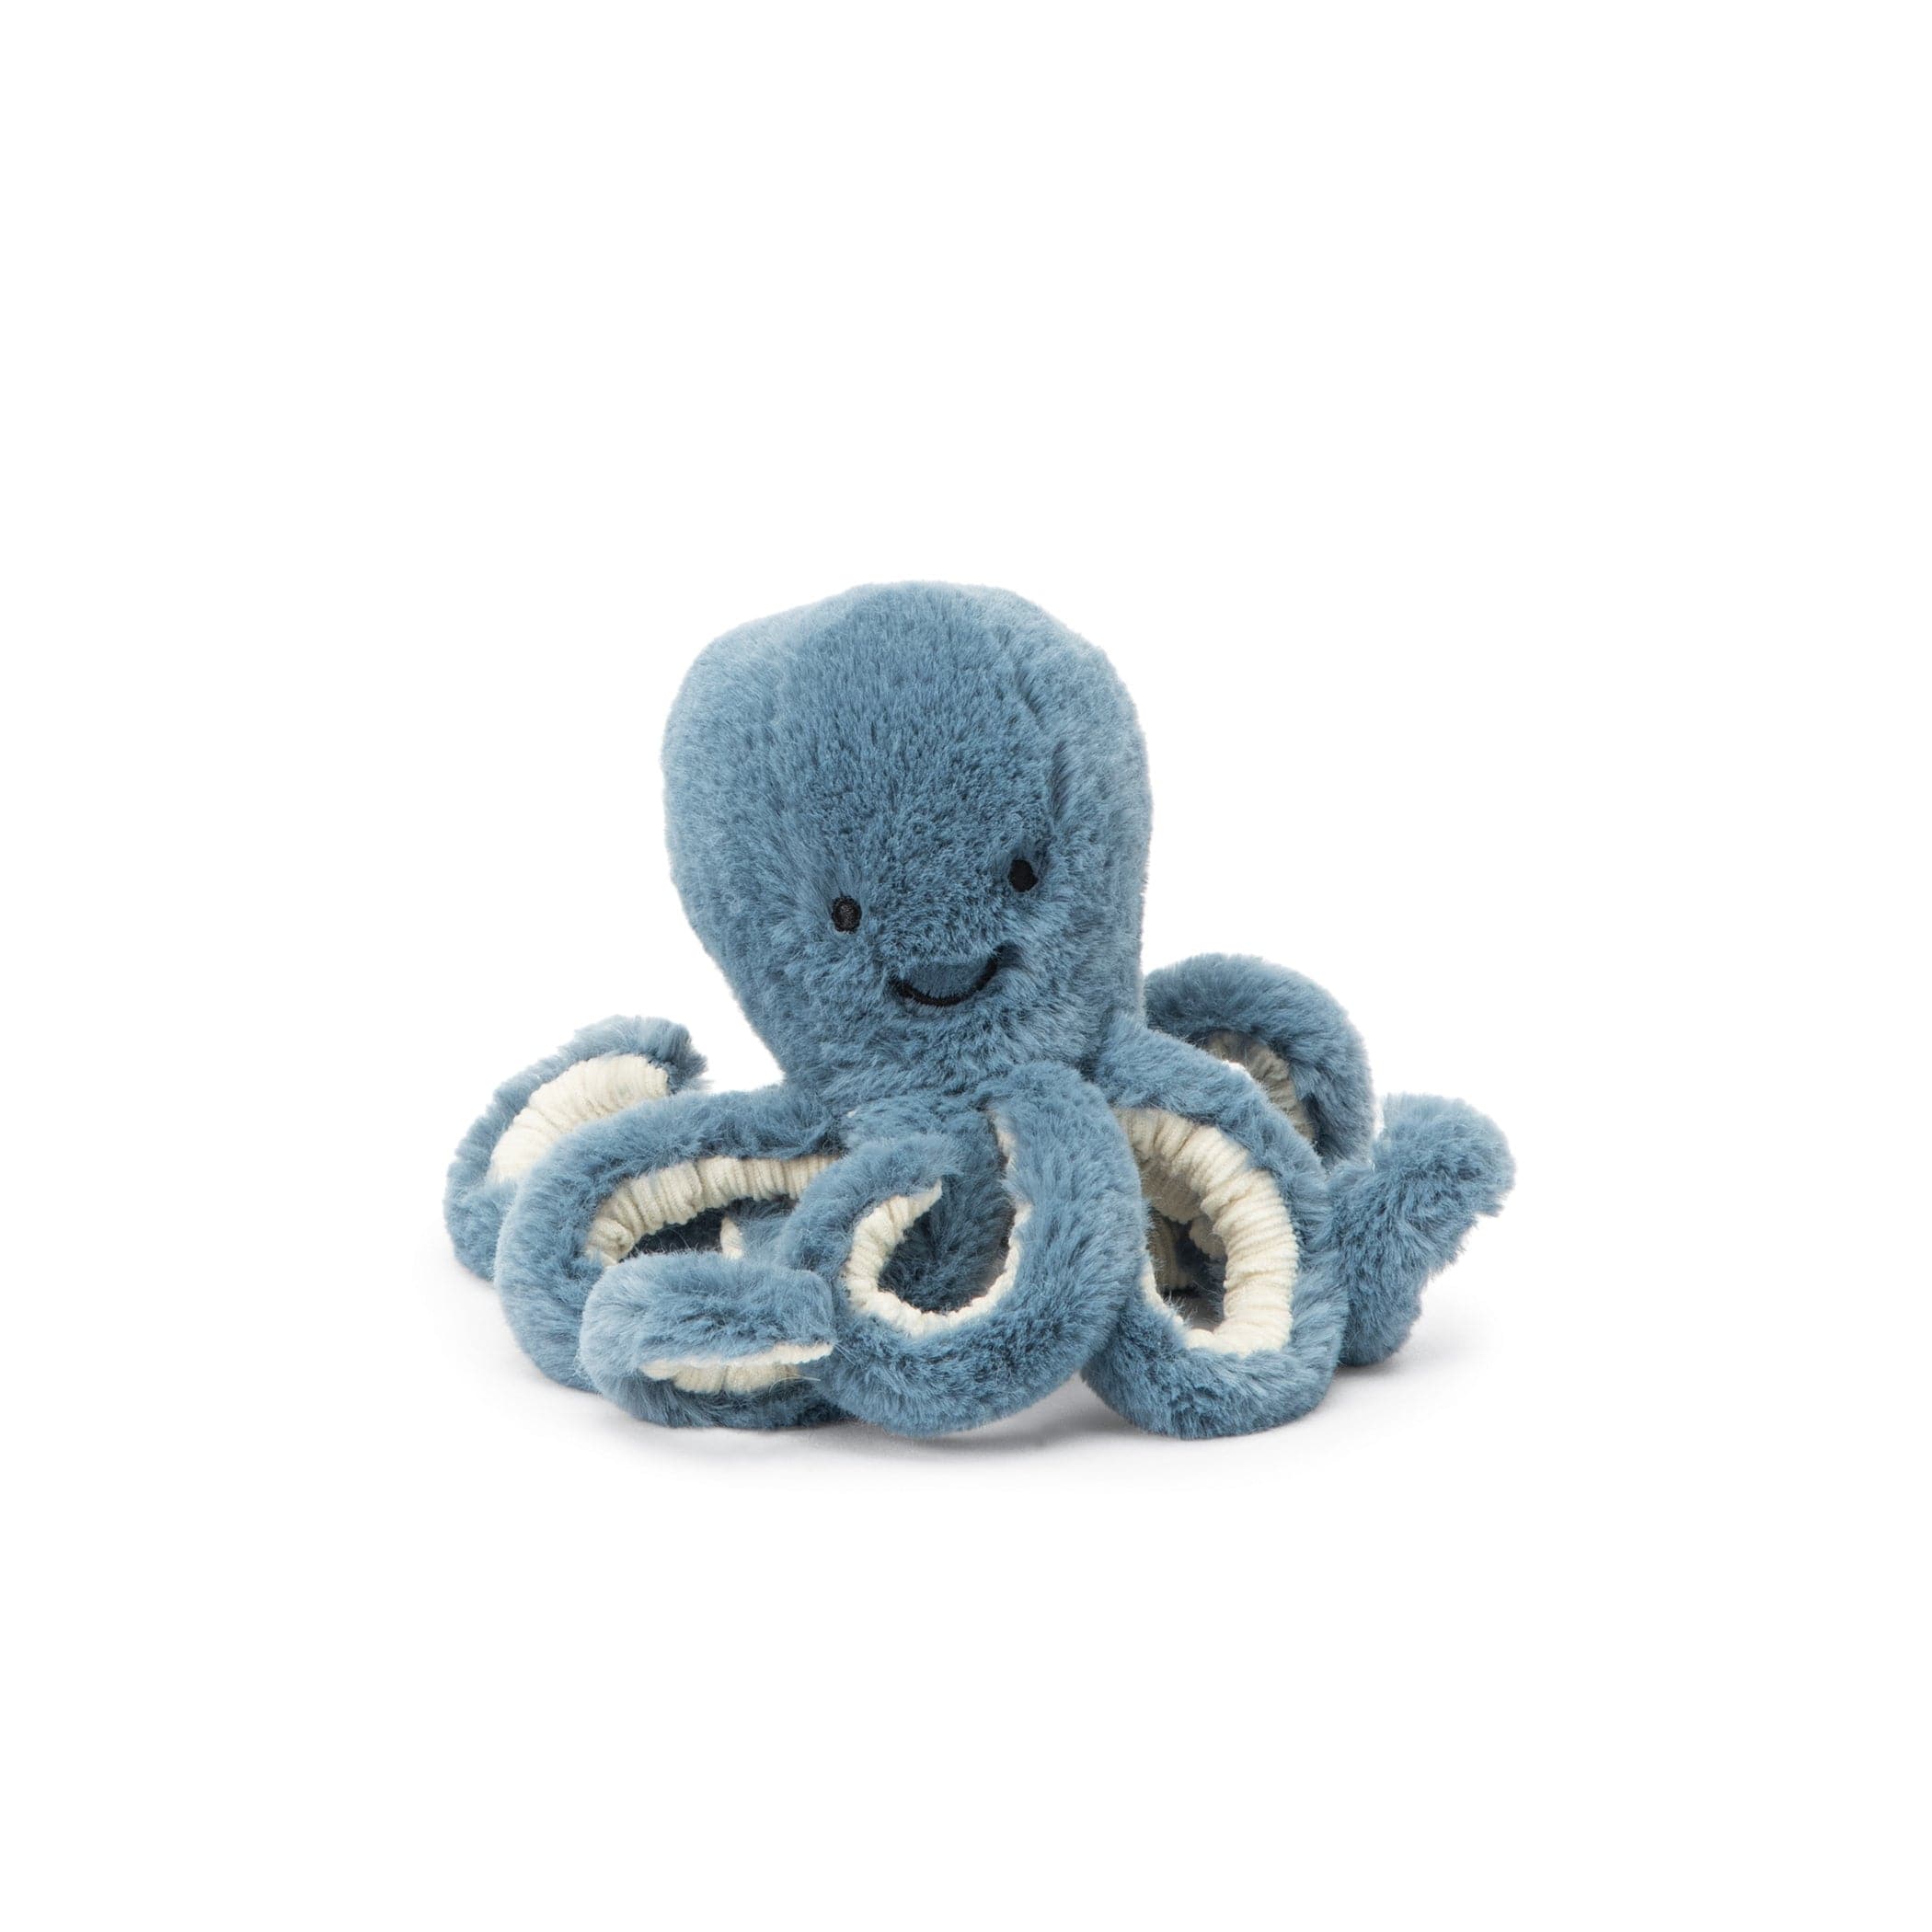 Jellycat-Ocean Life Octopus-STB4OC-Storm-Baby 7